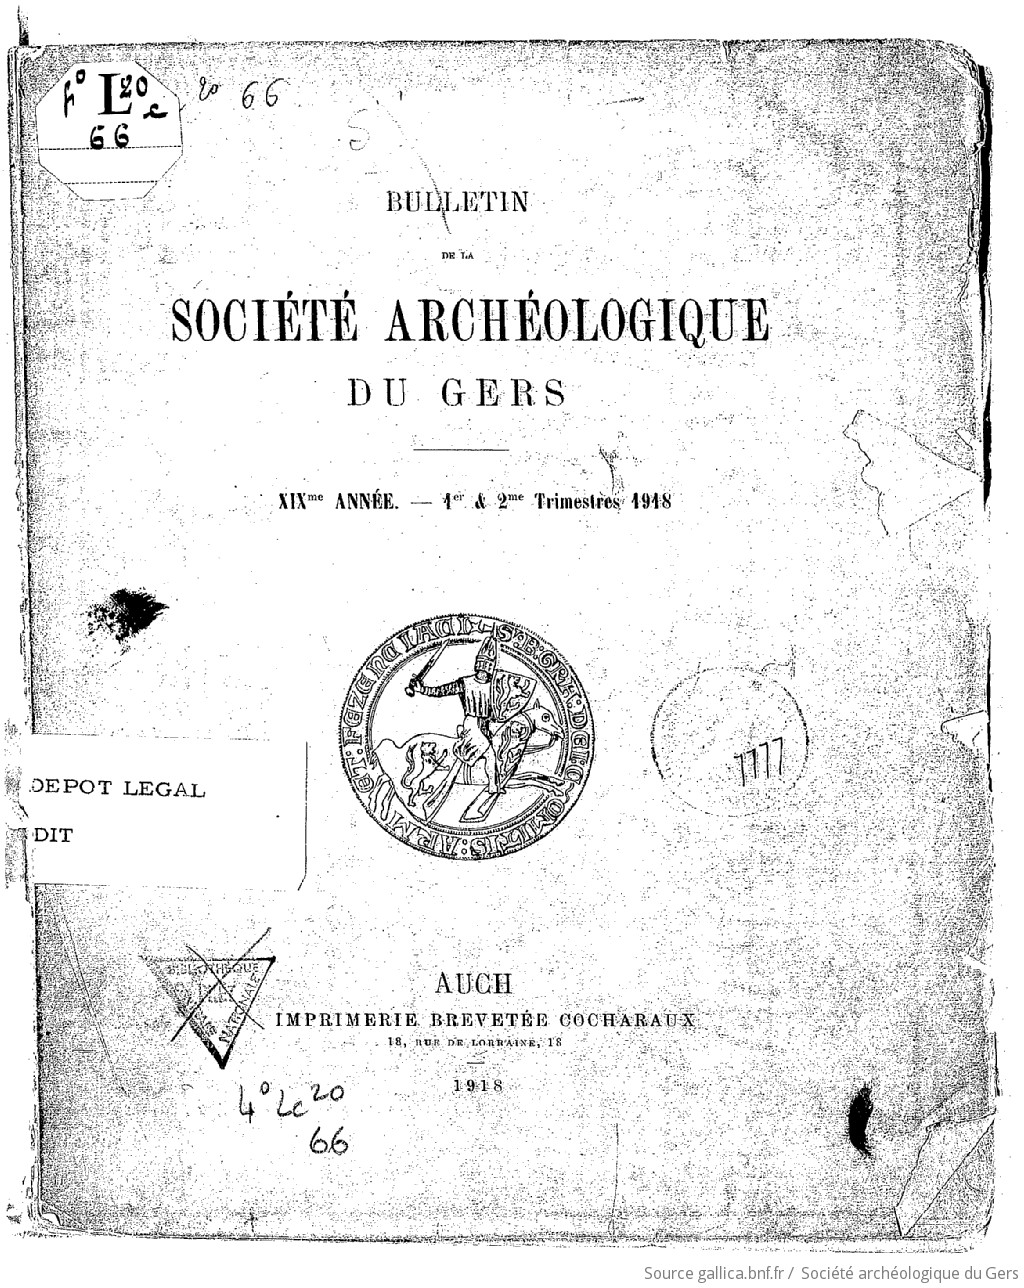 Bulletin de la Société archéologique du Gers